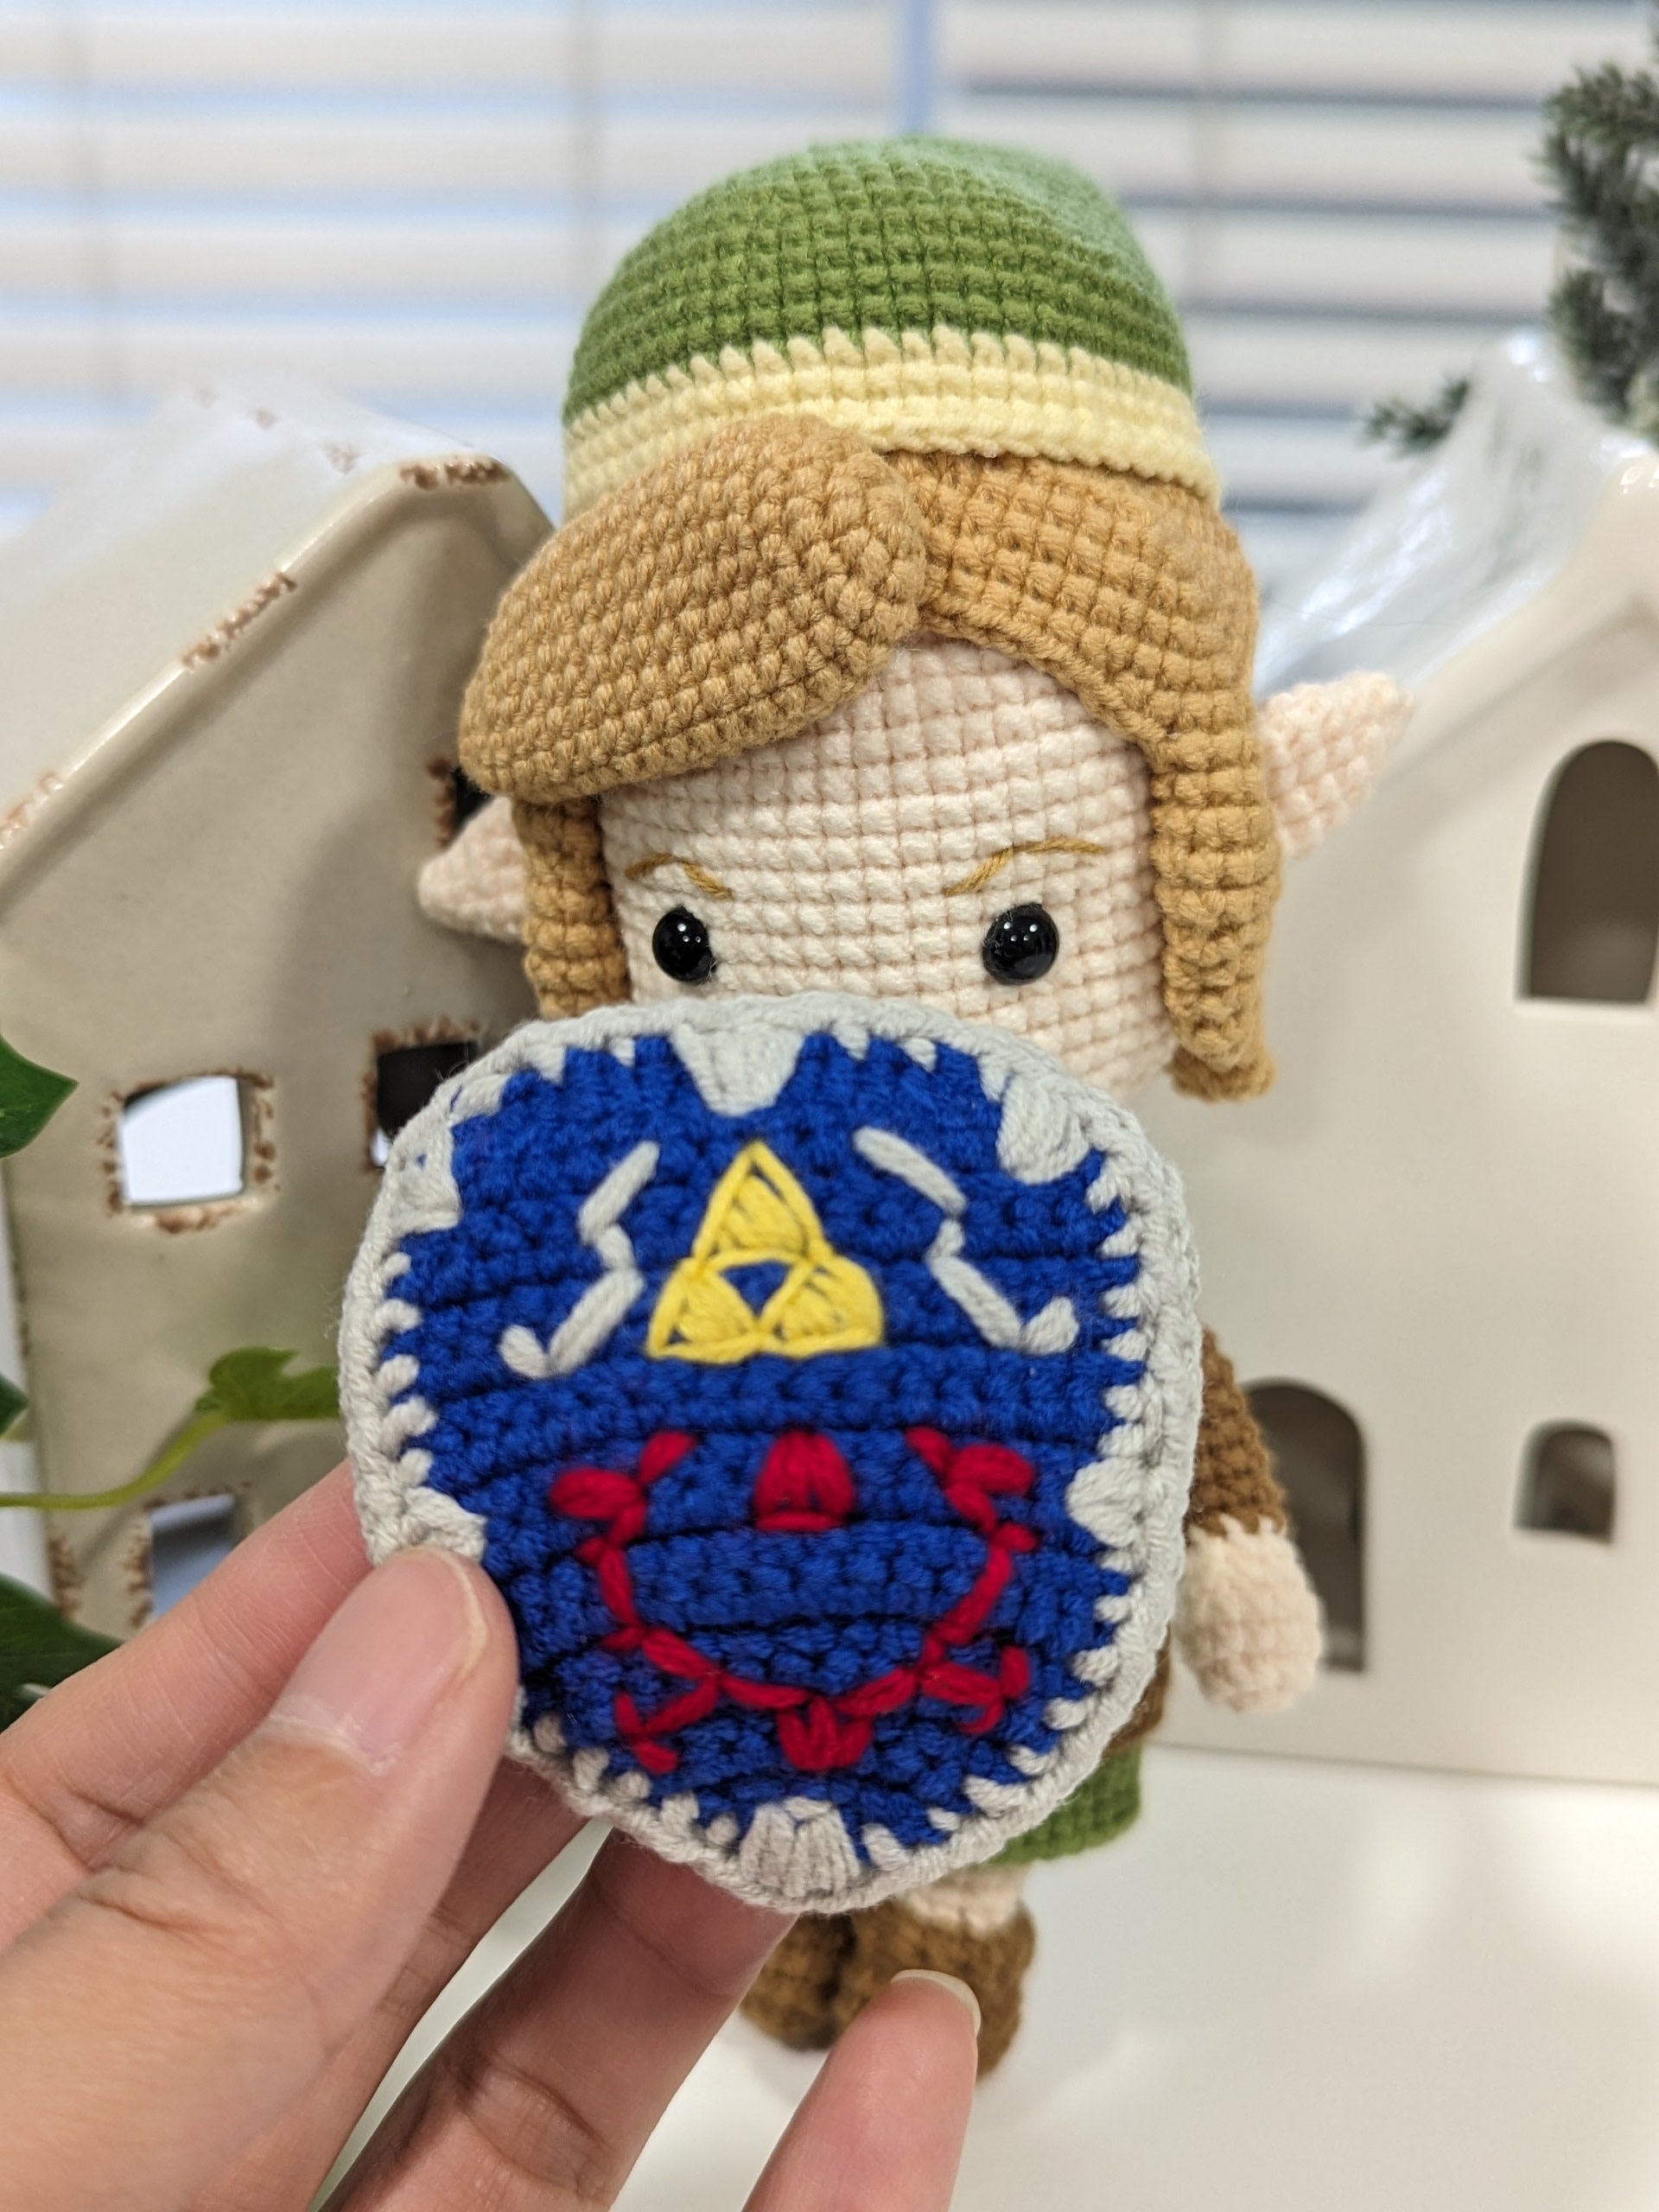 Link And Zelda Crochet Doll, The Legend of Zelda, Handmade Link